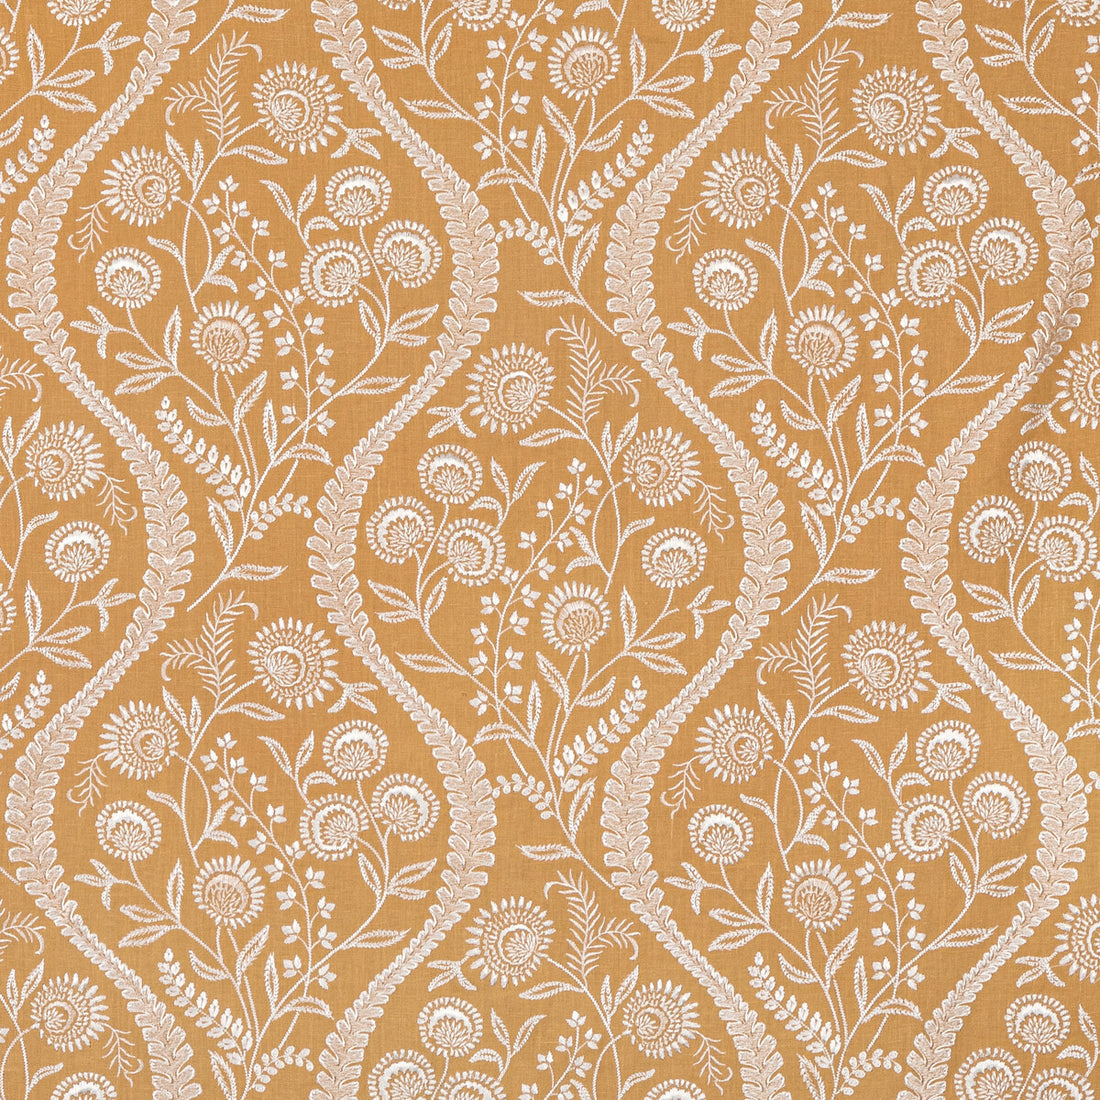 Floriblanca fabric in golden color - pattern 2020219.4.0 - by Lee Jofa in the Oscar De La Renta IV collection